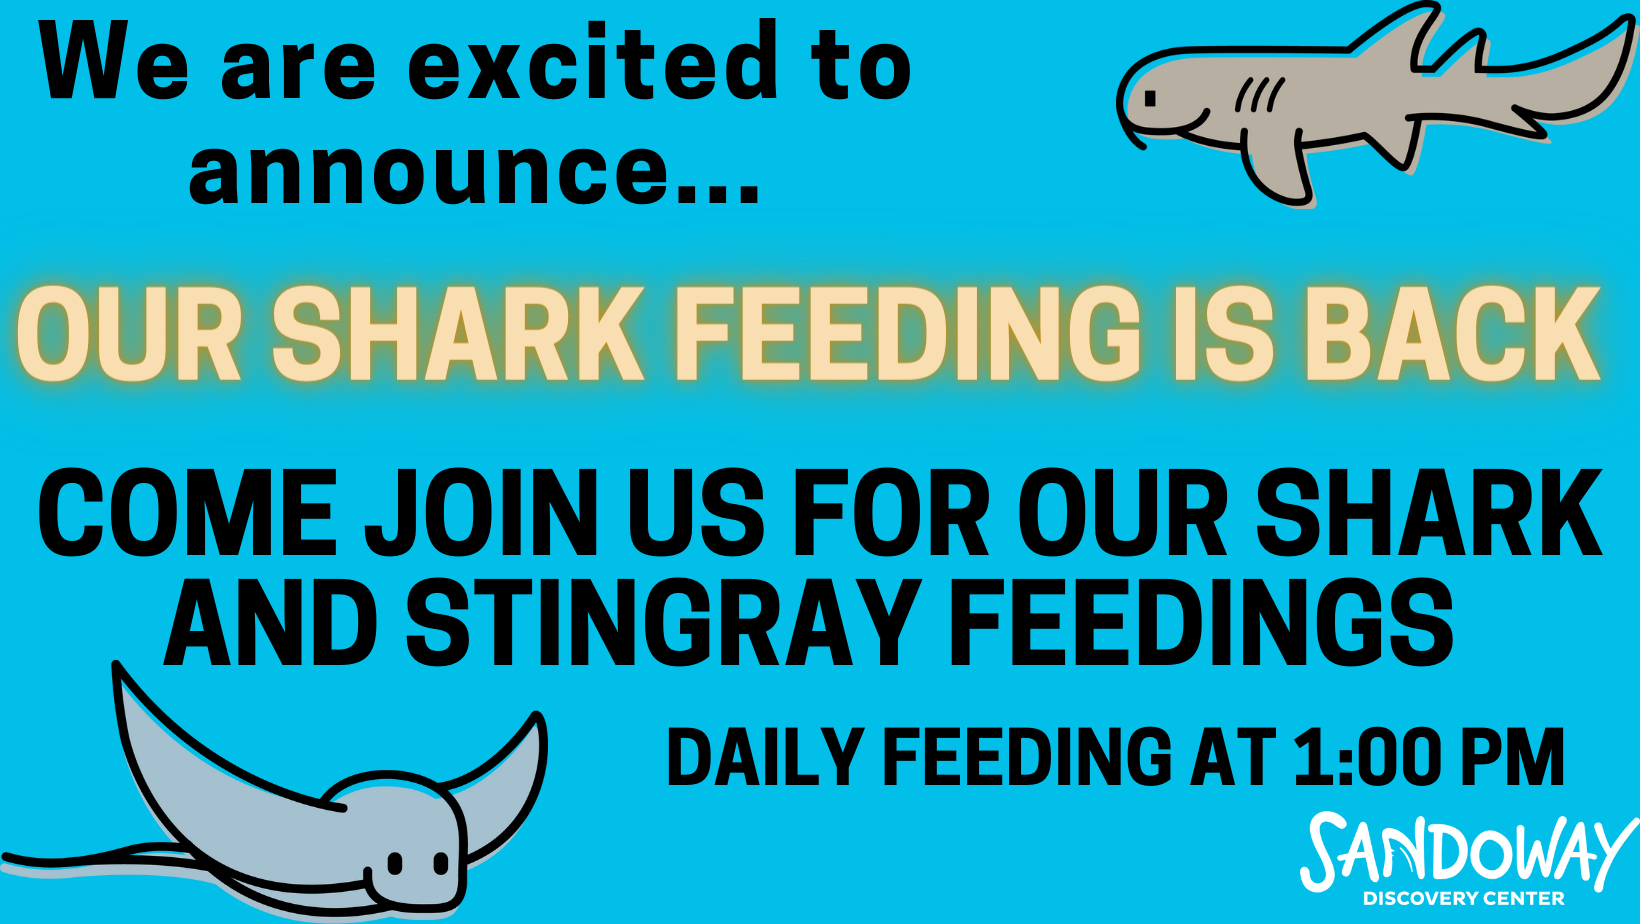 SHark feeding is back